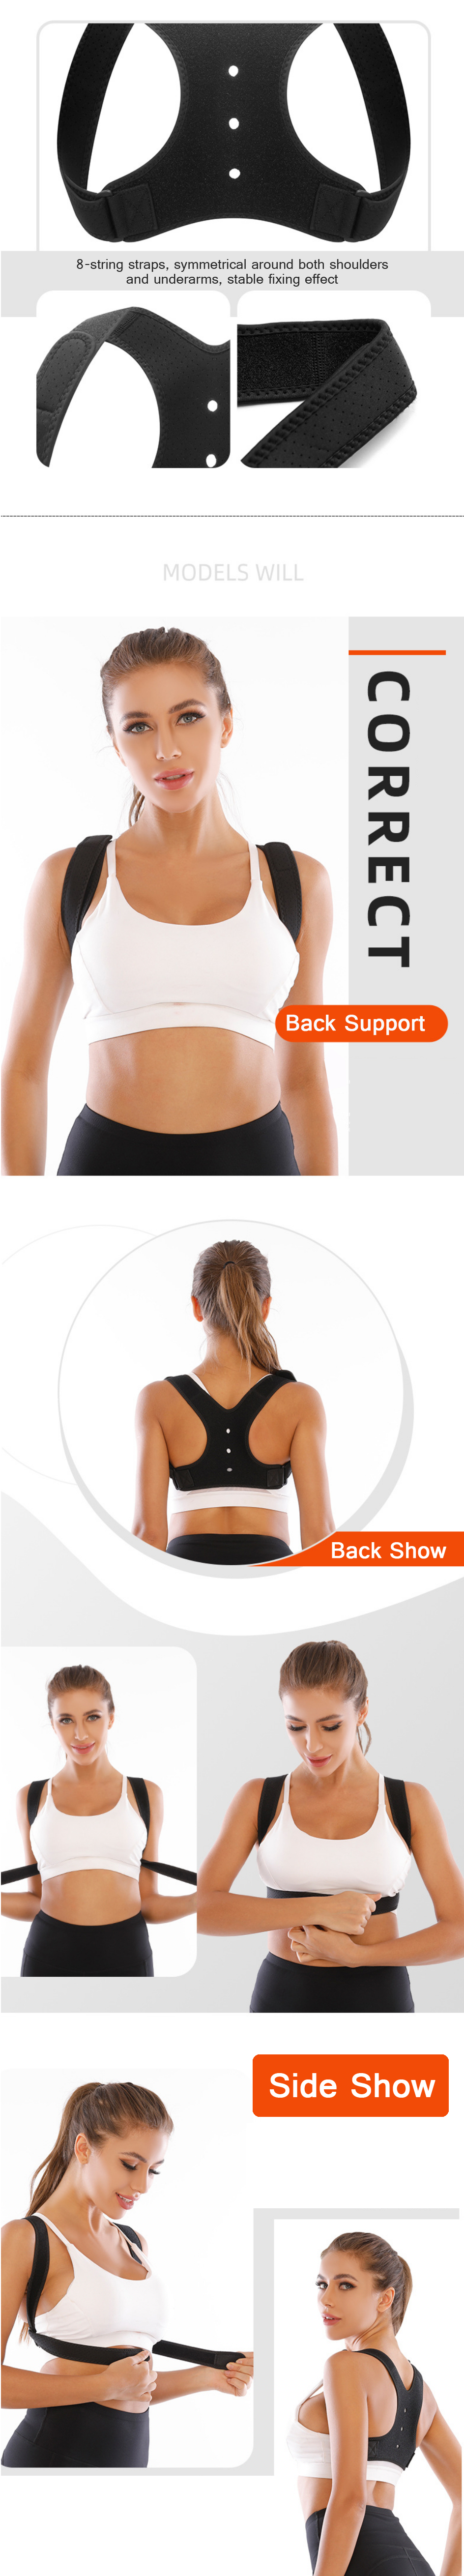 KALOAD-Posture-Corrector-Clavicle-Spine-Back-Shoulder-Brace-Support-Belt-Adjustable-Magic-Sticker-He-1823285-4